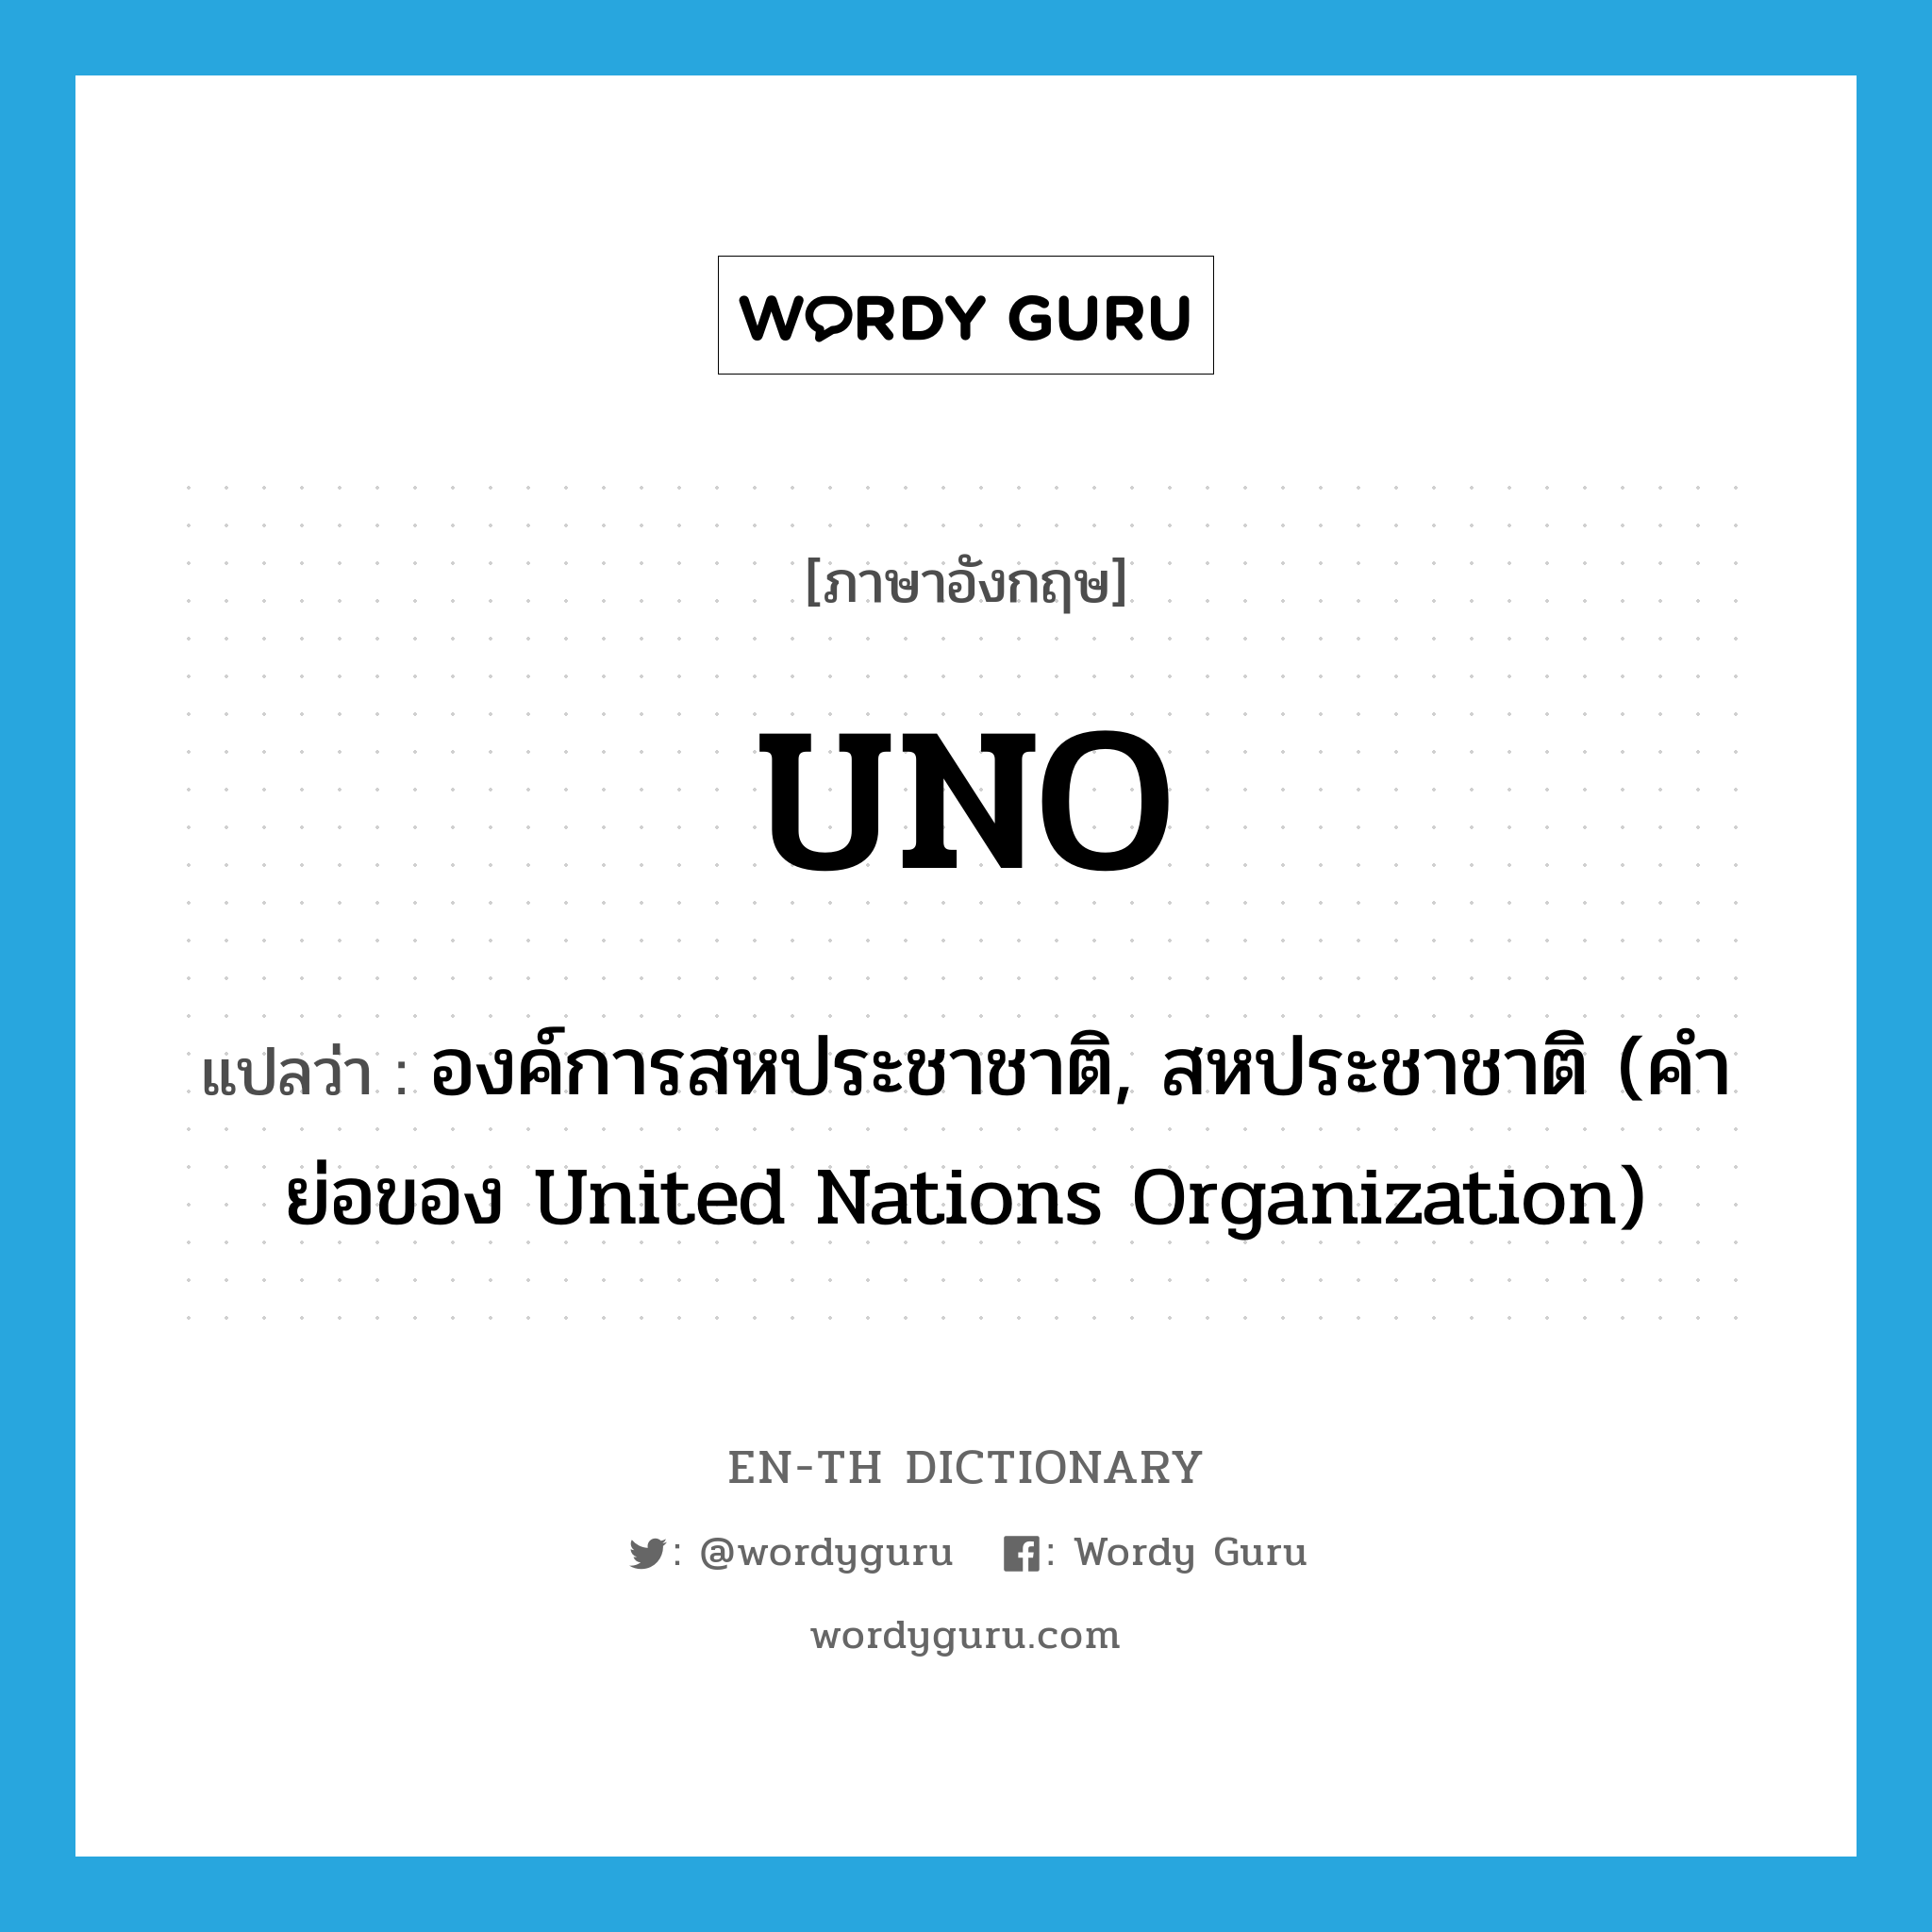 องค์การสหประชาชาติ, สหประชาชาติ (คำย่อของ United Nations Organization) ภาษาอังกฤษ?, คำศัพท์ภาษาอังกฤษ องค์การสหประชาชาติ, สหประชาชาติ (คำย่อของ United Nations Organization) แปลว่า UNO ประเภท ABBR หมวด ABBR